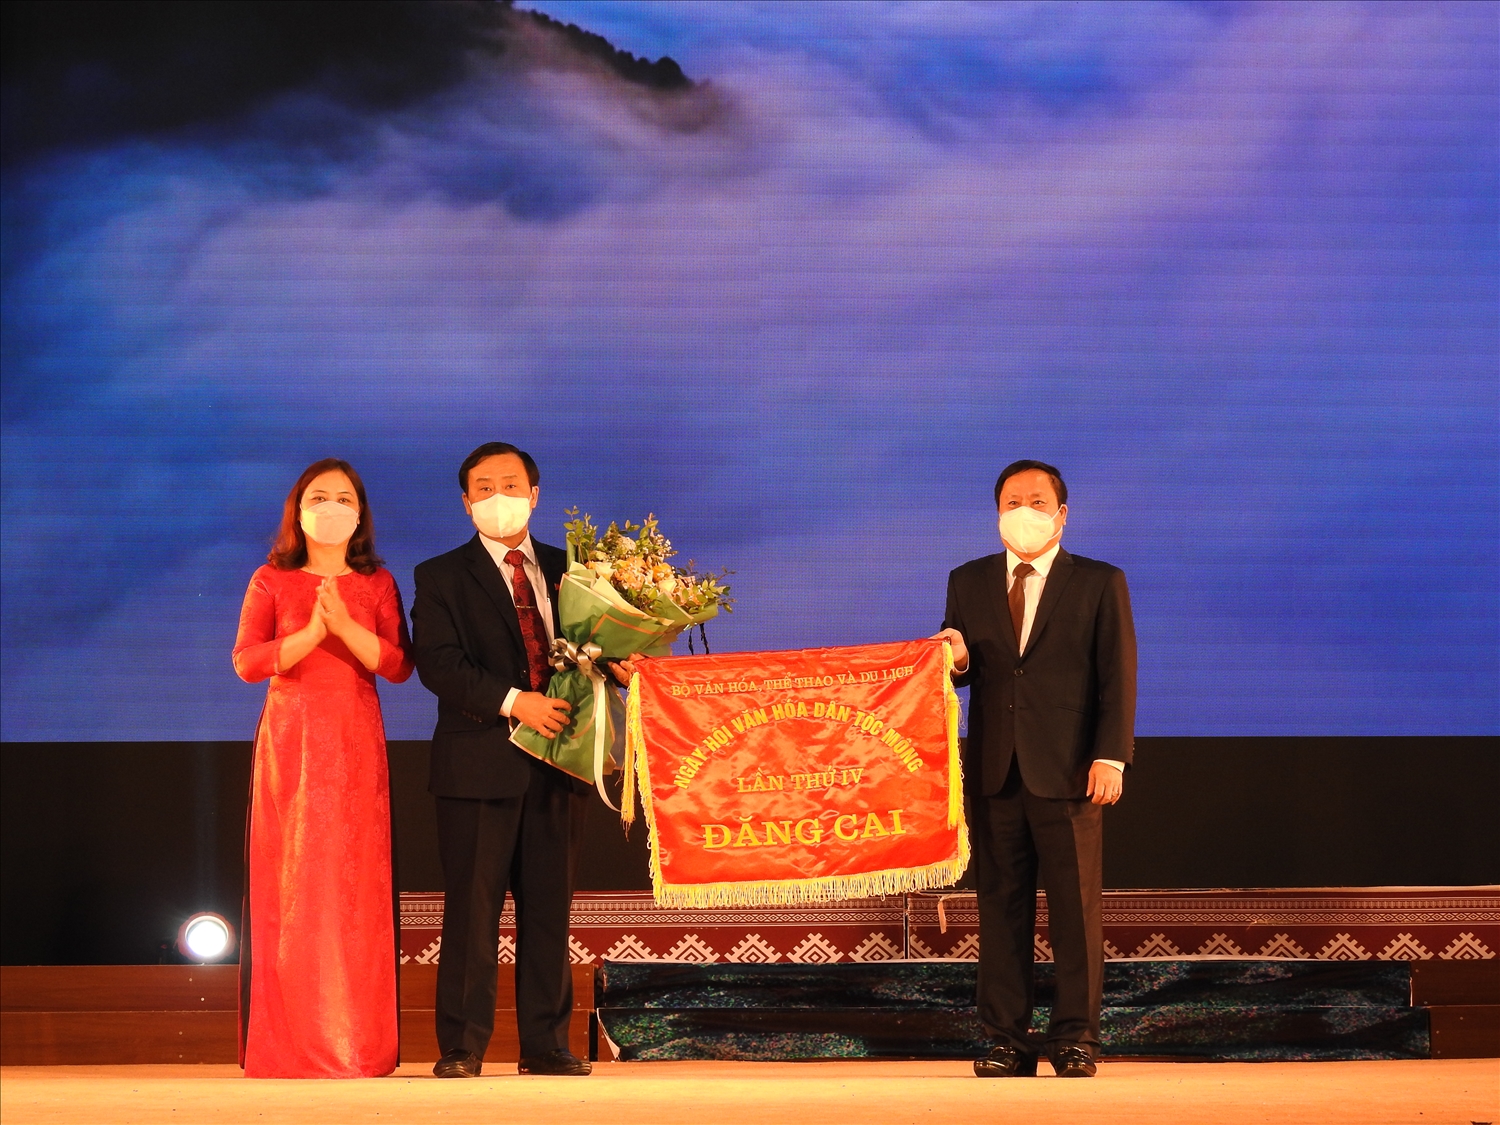 Ông Vừ A Bằng, Phó Chủ tịch UBND tỉnh Điện Biên nhận cờ đăng cai tổ chức Ngày hội Văn hóa dân tộc Mông toàn quốc lần thứ IV tại tỉnh Điện Biên